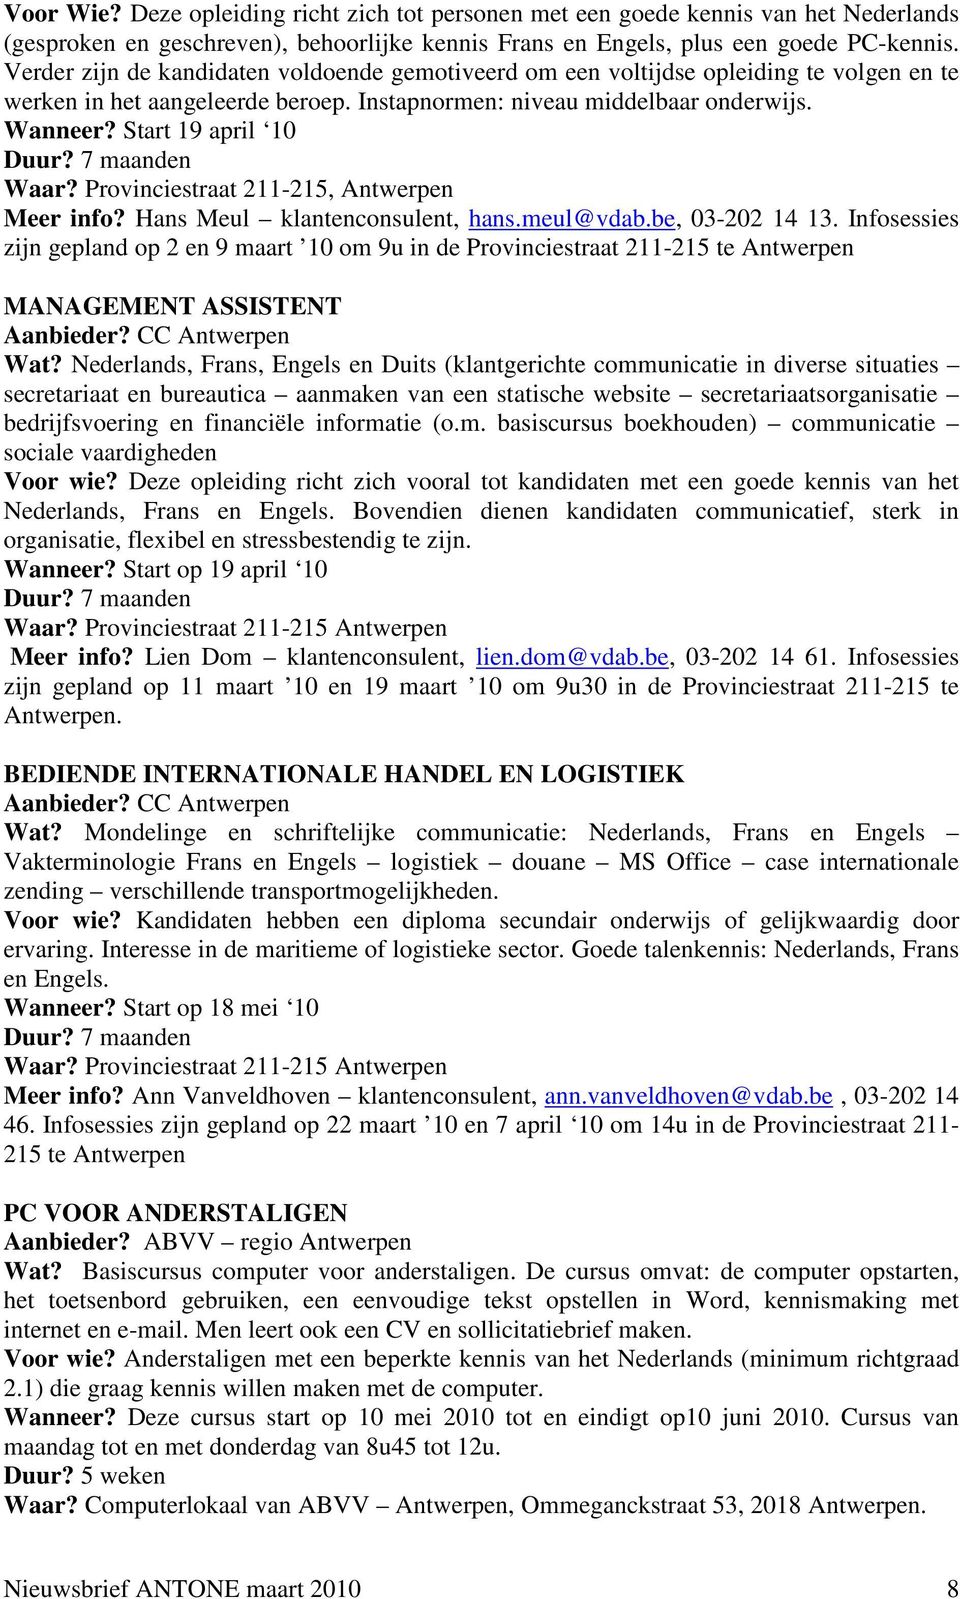 7 maanden Waar? Provinciestraat 211-215, Antwerpen Meer info? Hans Meul klantenconsulent, hans.meul@vdab.be, 03-202 14 13.